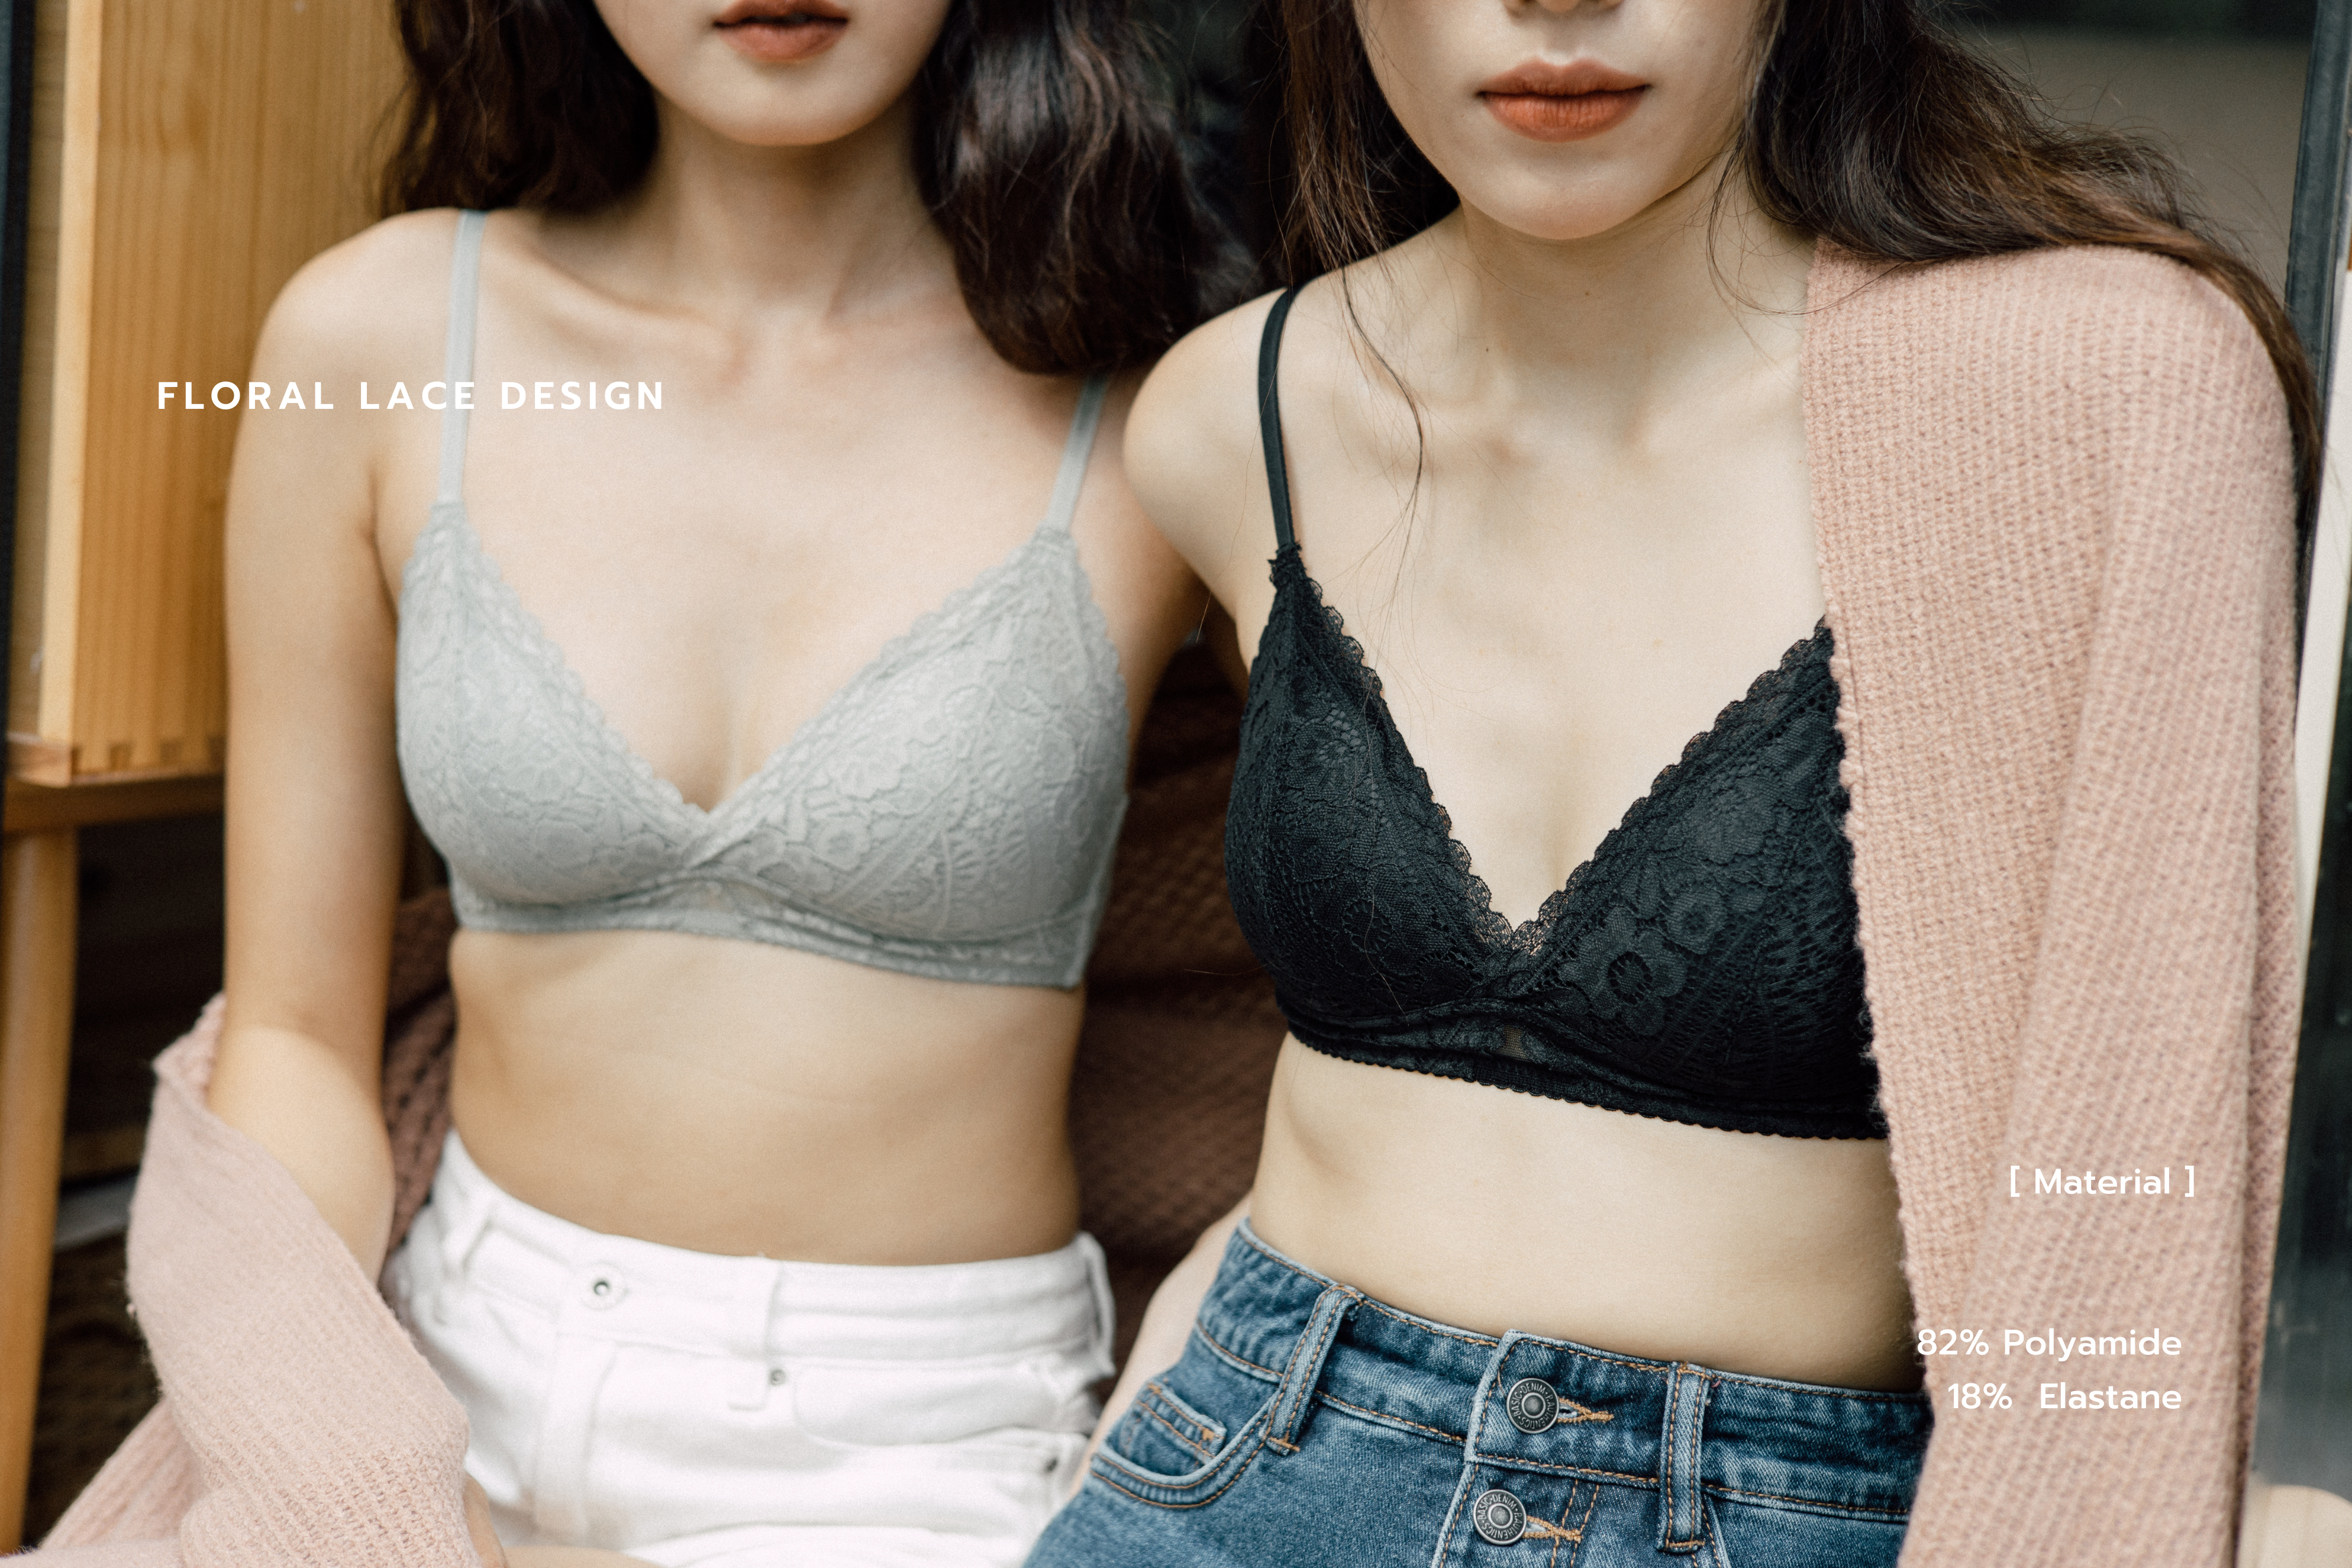 Buy Celessa Soft Clothing BELLE SÉRIEN - Lace Bralette Online